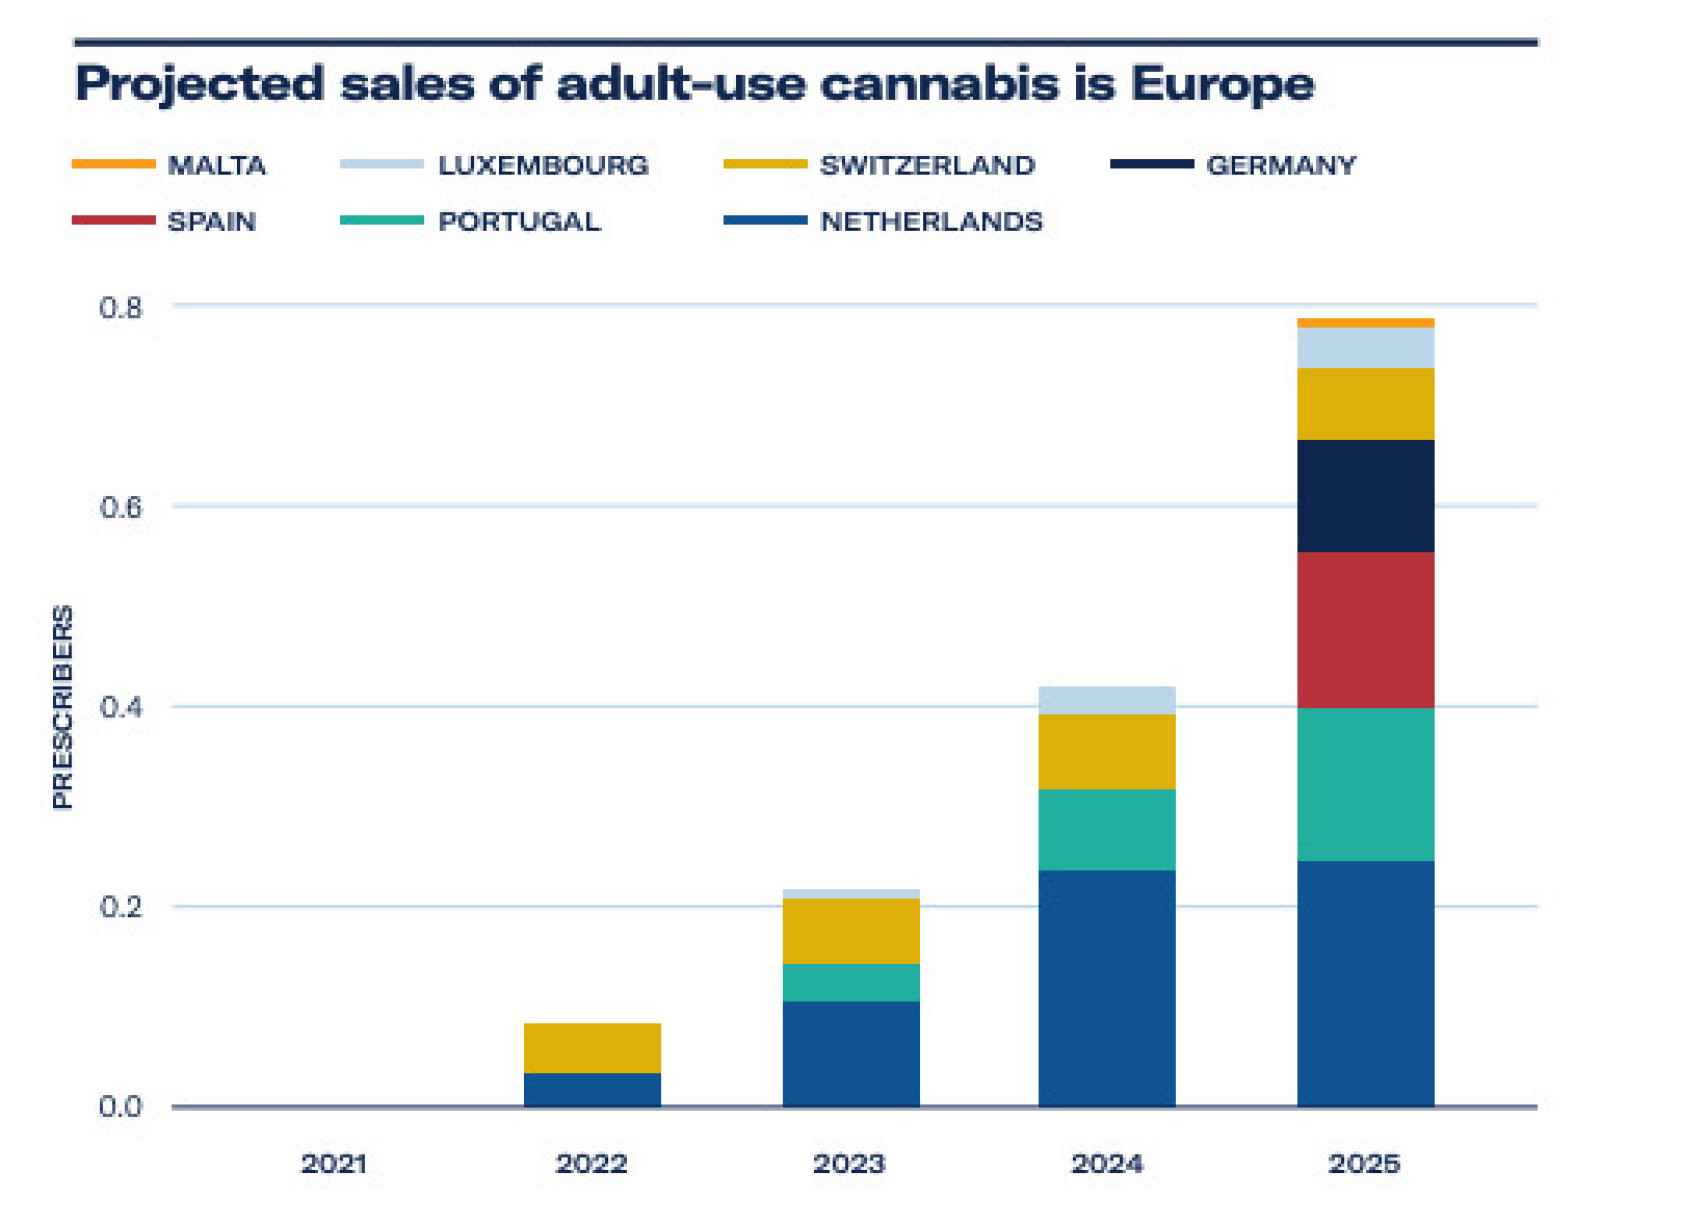 Posible crecimiento de mercado del cannabis medicinal en Europa según un reciente estudio.